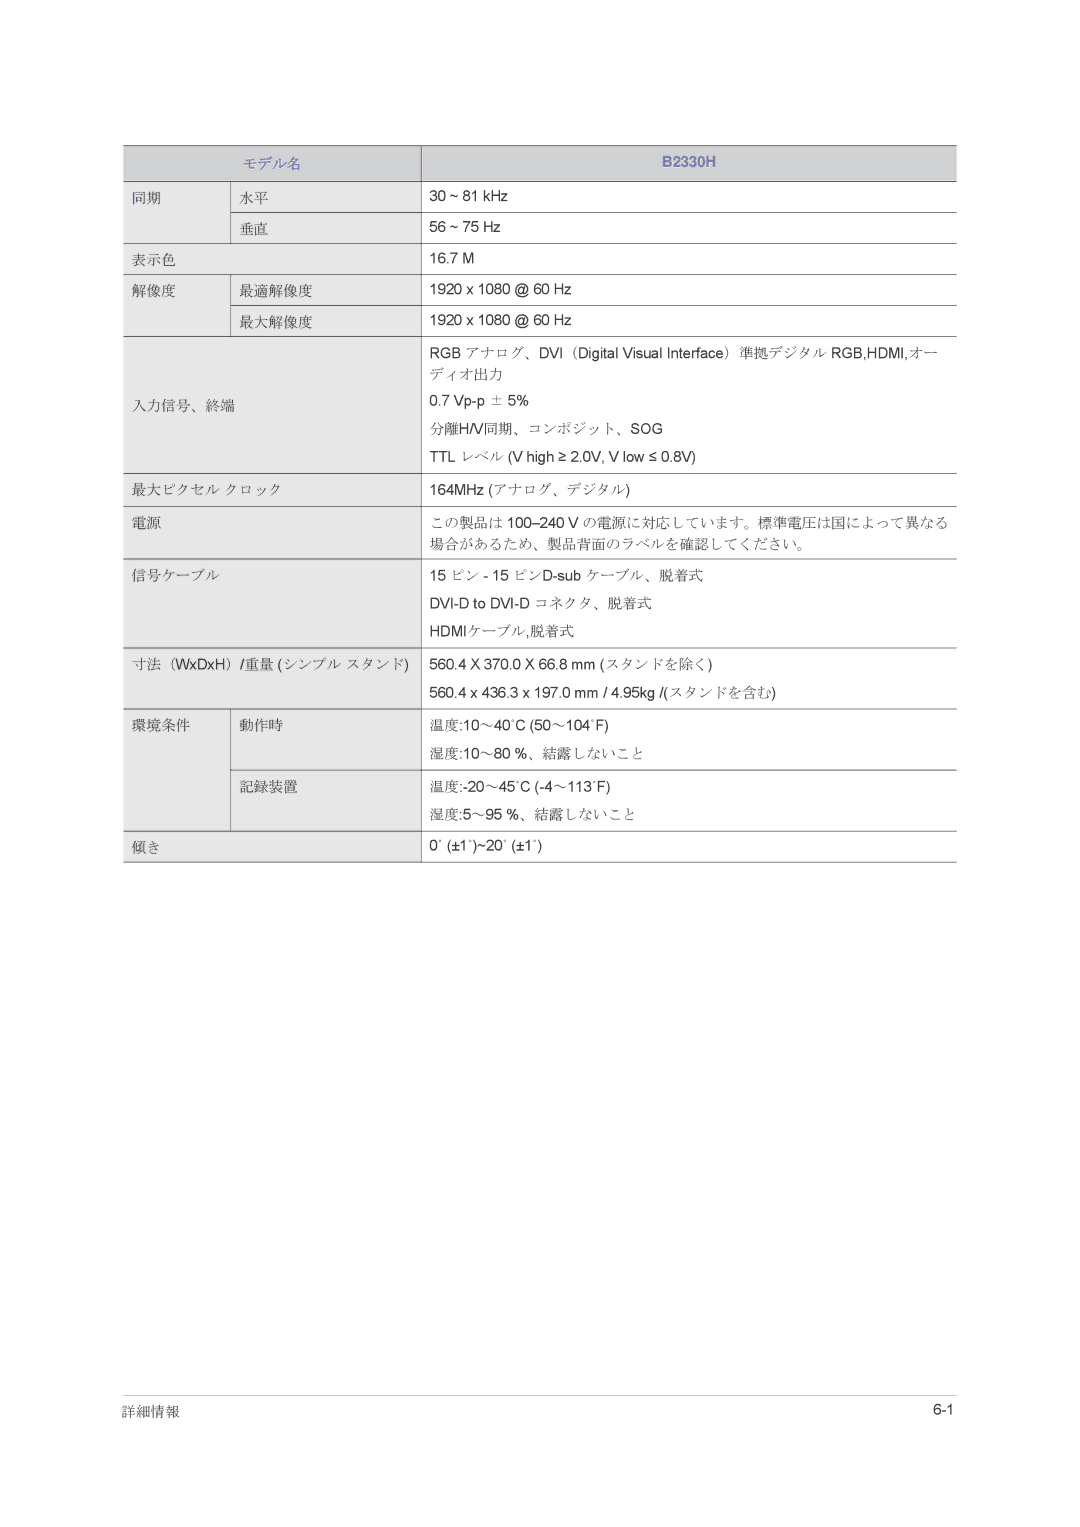 Samsung LS23PUHKFV/XJ, LS22PUHKFV/XJ, LS24PUHKFV/XJ manual 詳細情報 